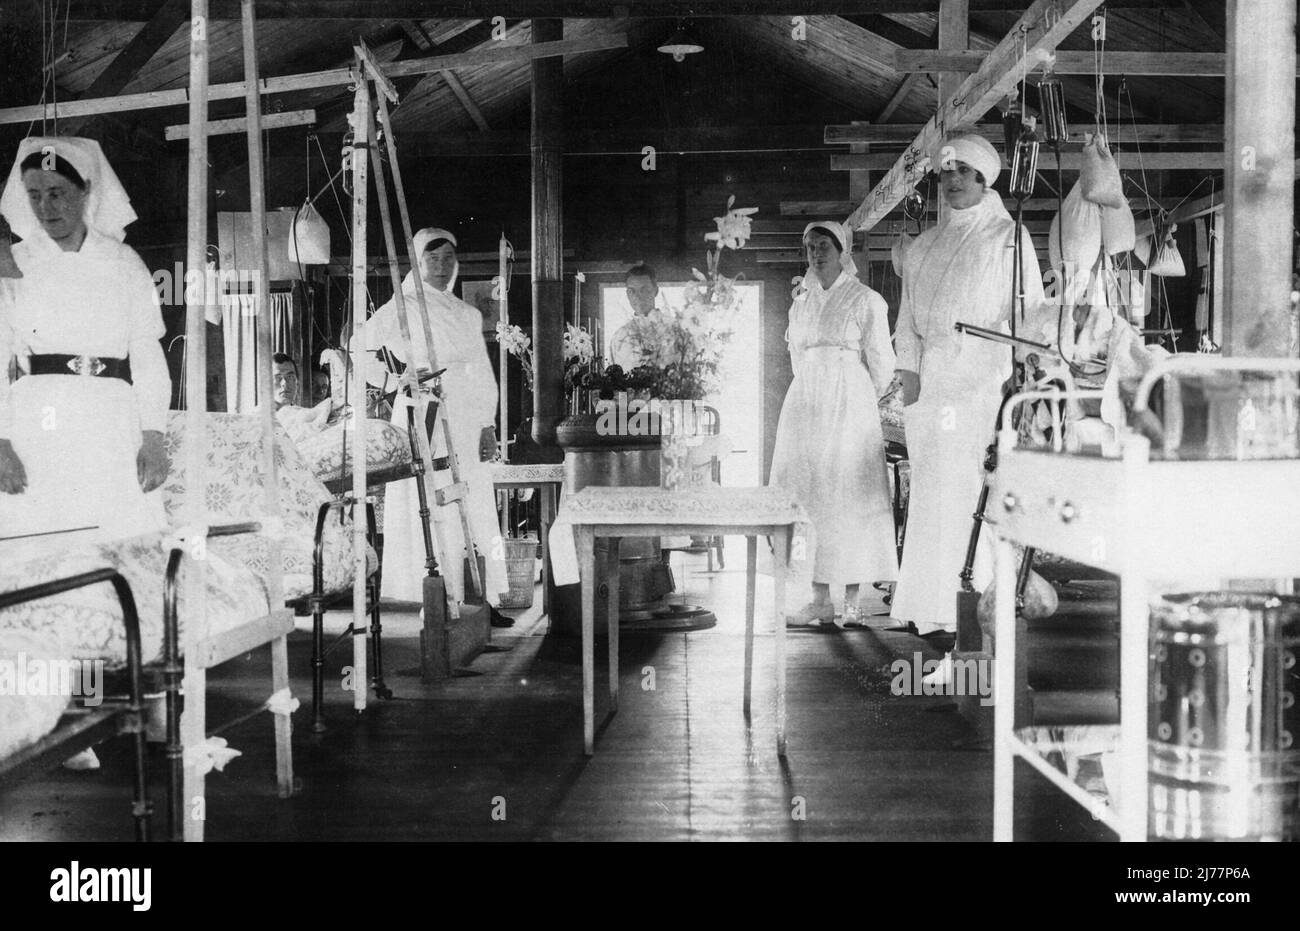 Quatre infirmières se tiennent près de leur lit pendant qu'un homme pousse un chariot dans l'allée jusqu'à la table au milieu. Banque D'Images